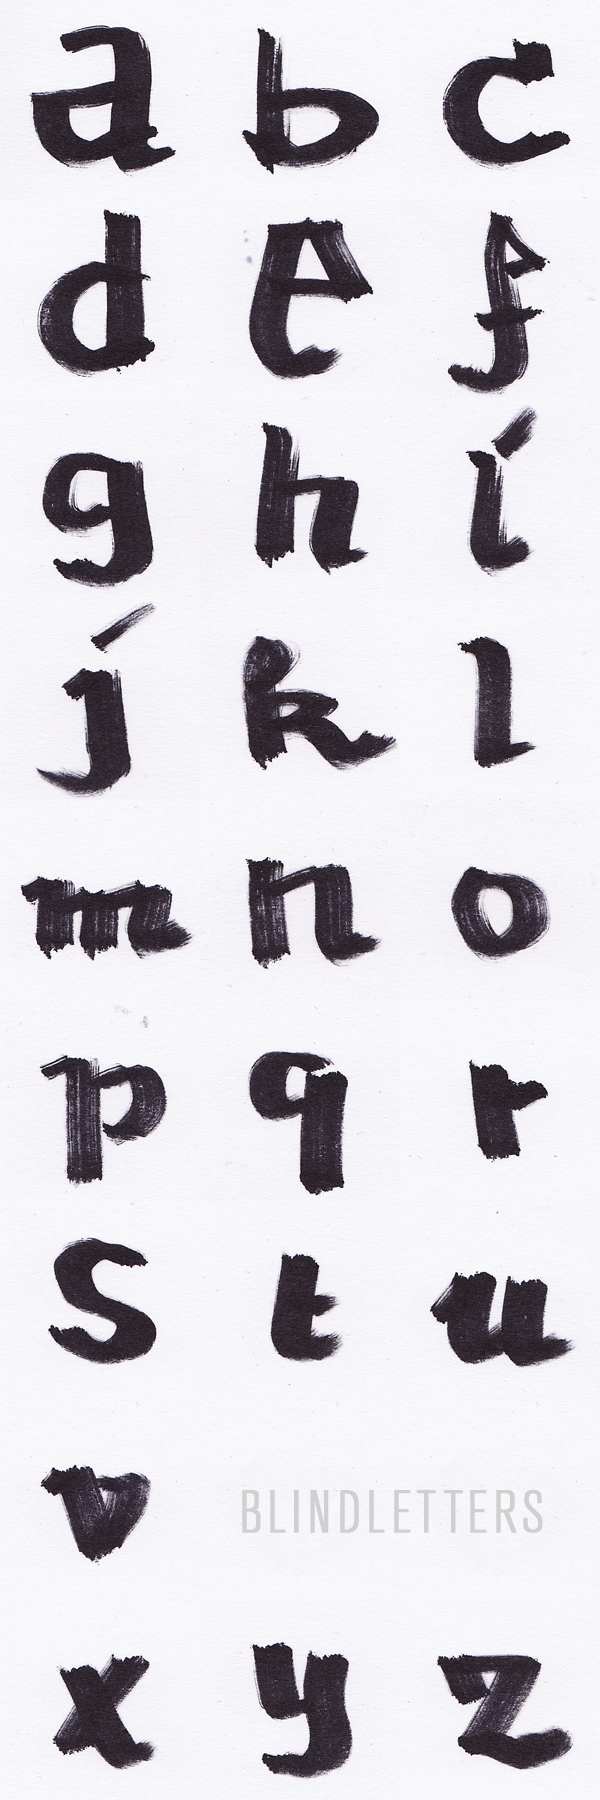 letters blind alphabet blindletters